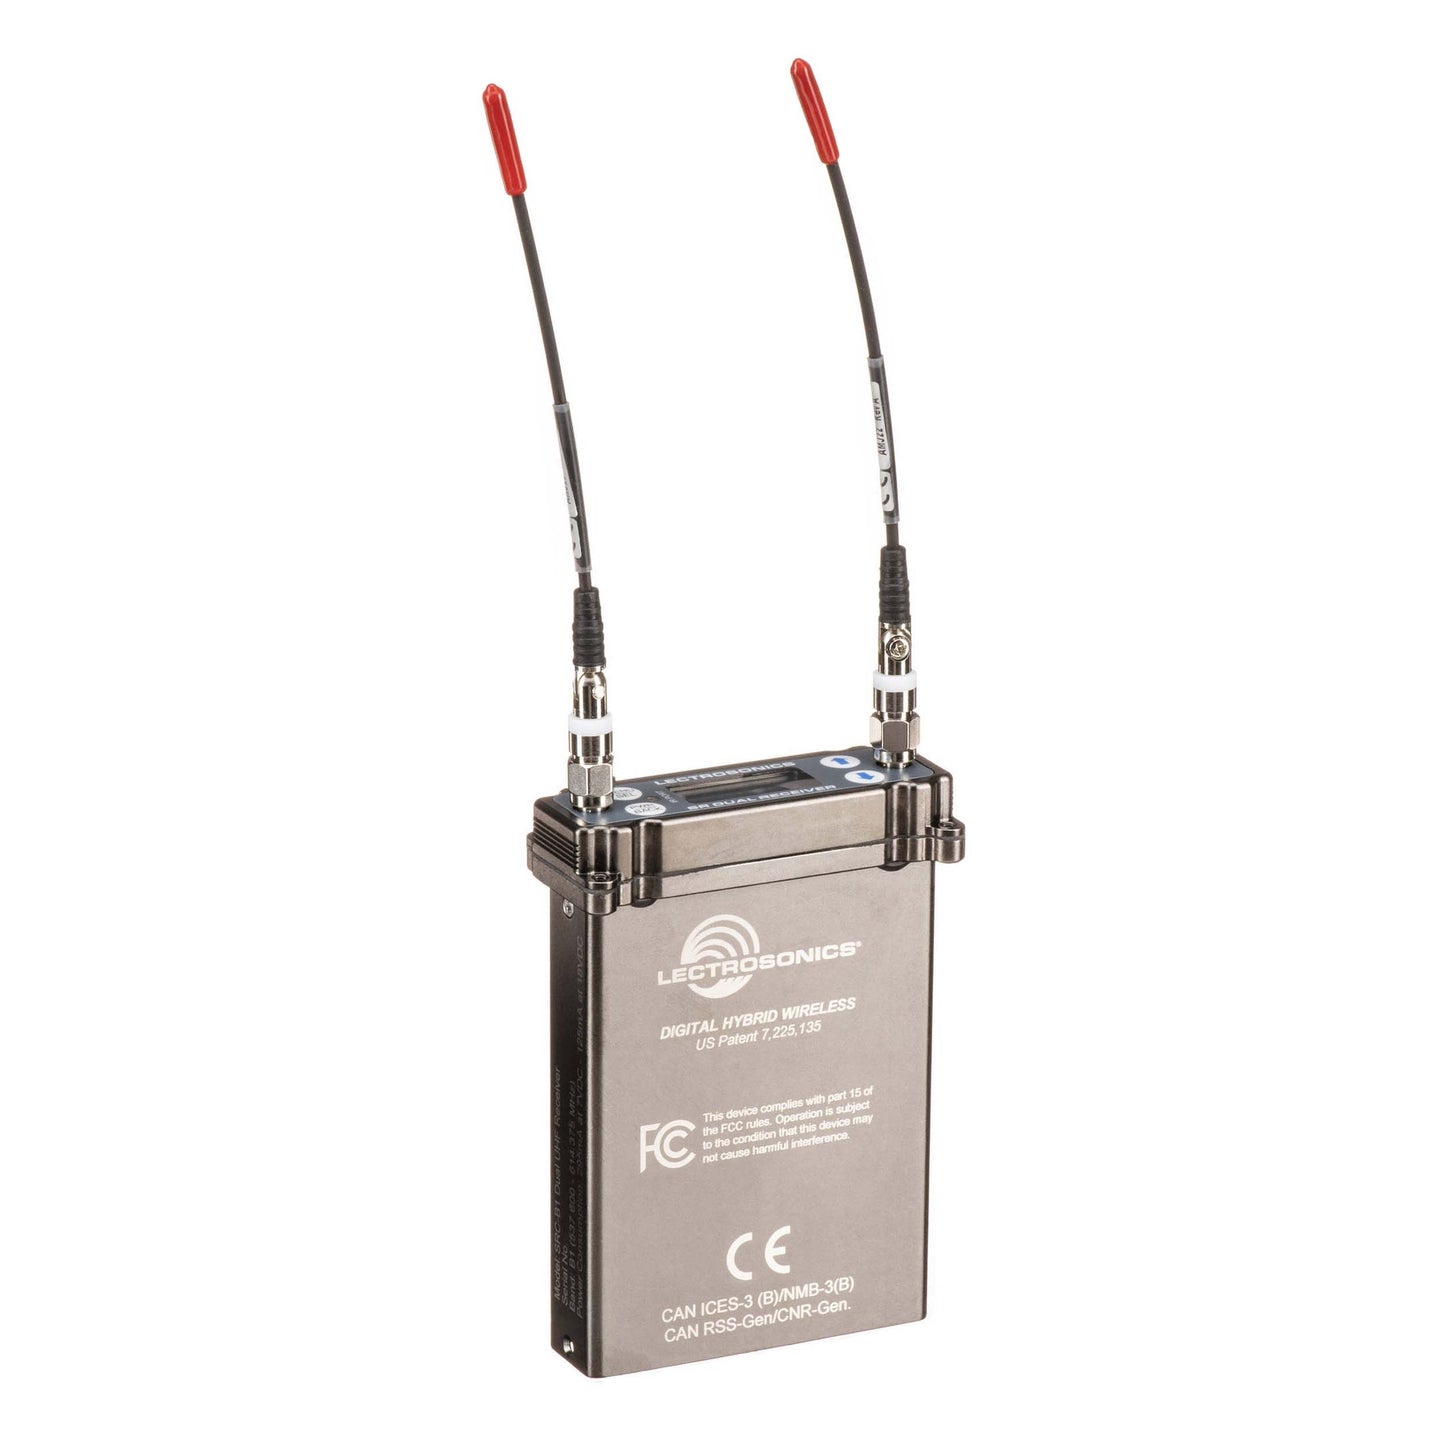 Lectrosonics SRc Dual-Channel Receiver w/SuperSlot (SRc-B1: 537.6 - 614.375 MHz)